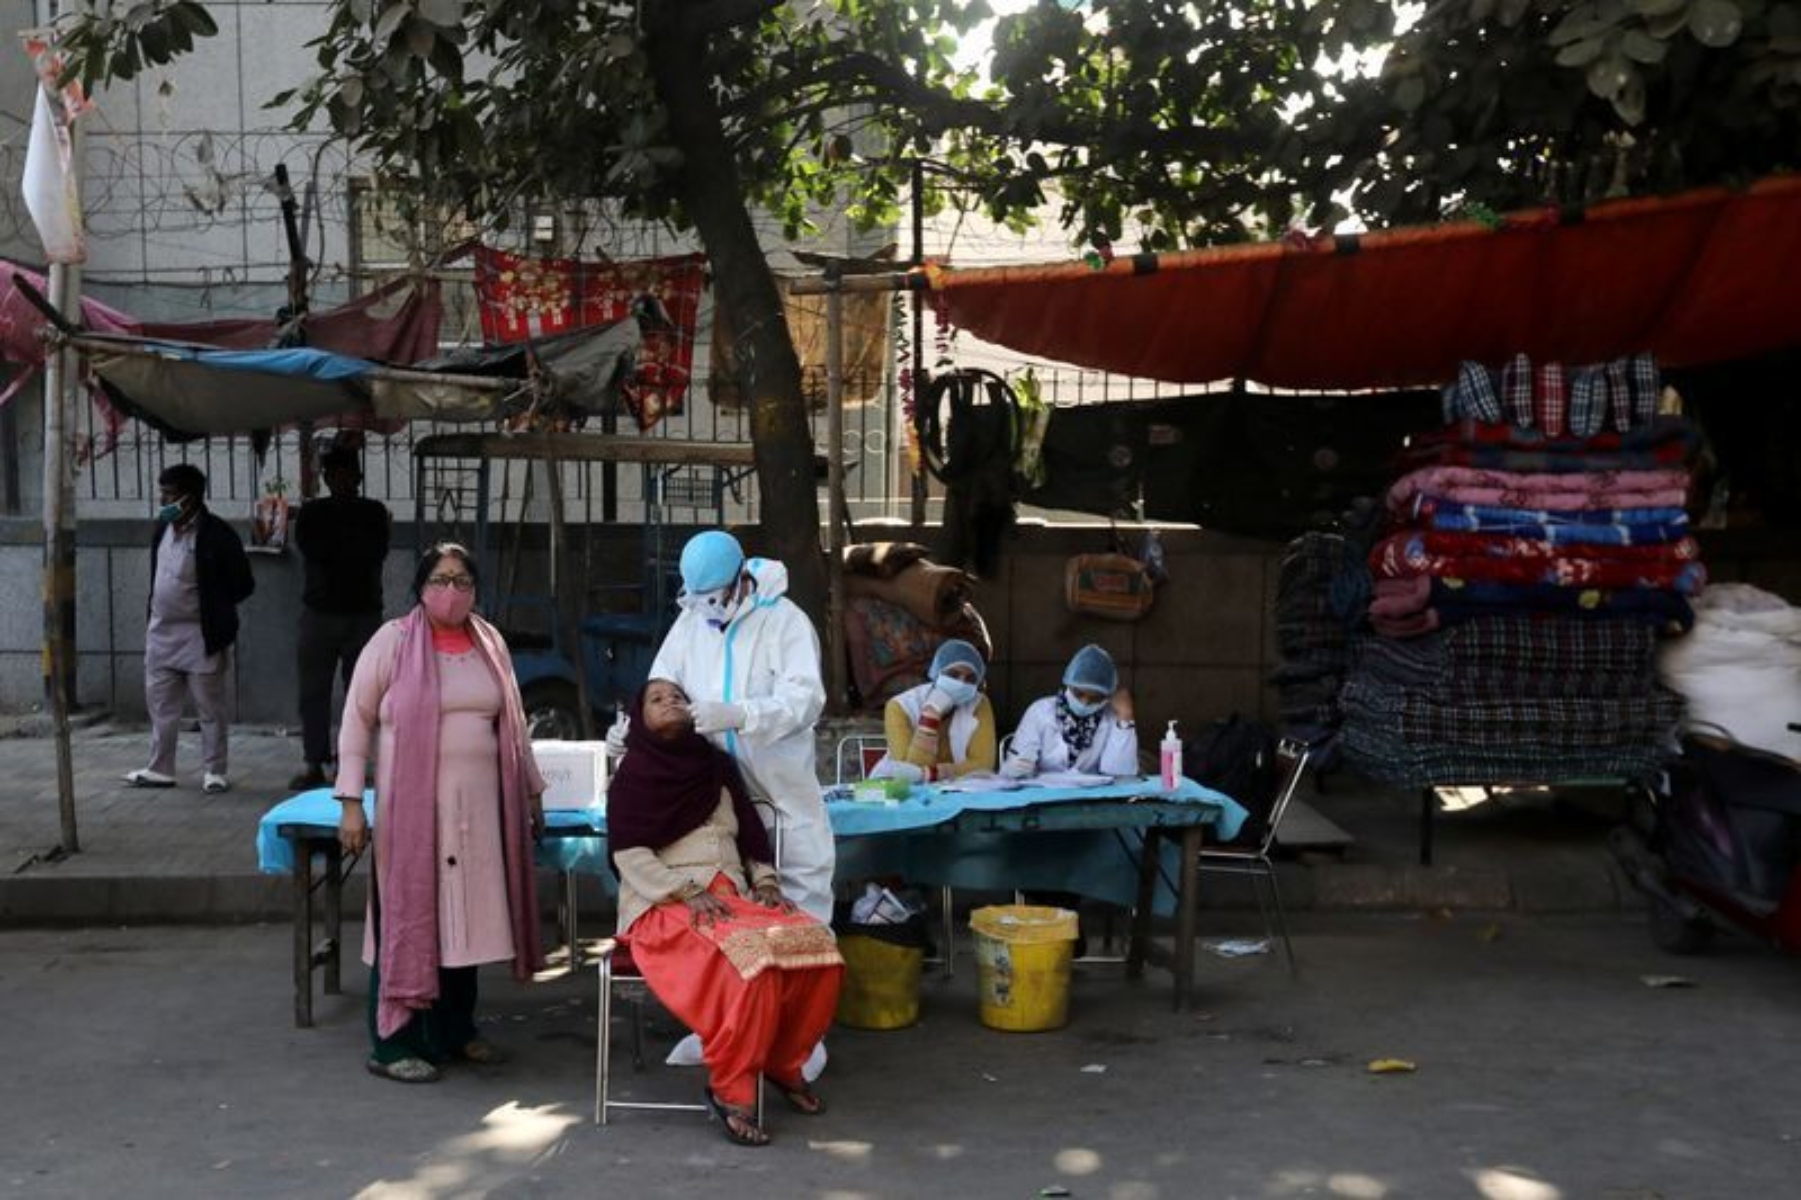 Ινδία- Νέο Δελχί: Οι μισοί κάτοικοι του Νέου Δελχί εκτέθηκαν στον κορωνοϊό